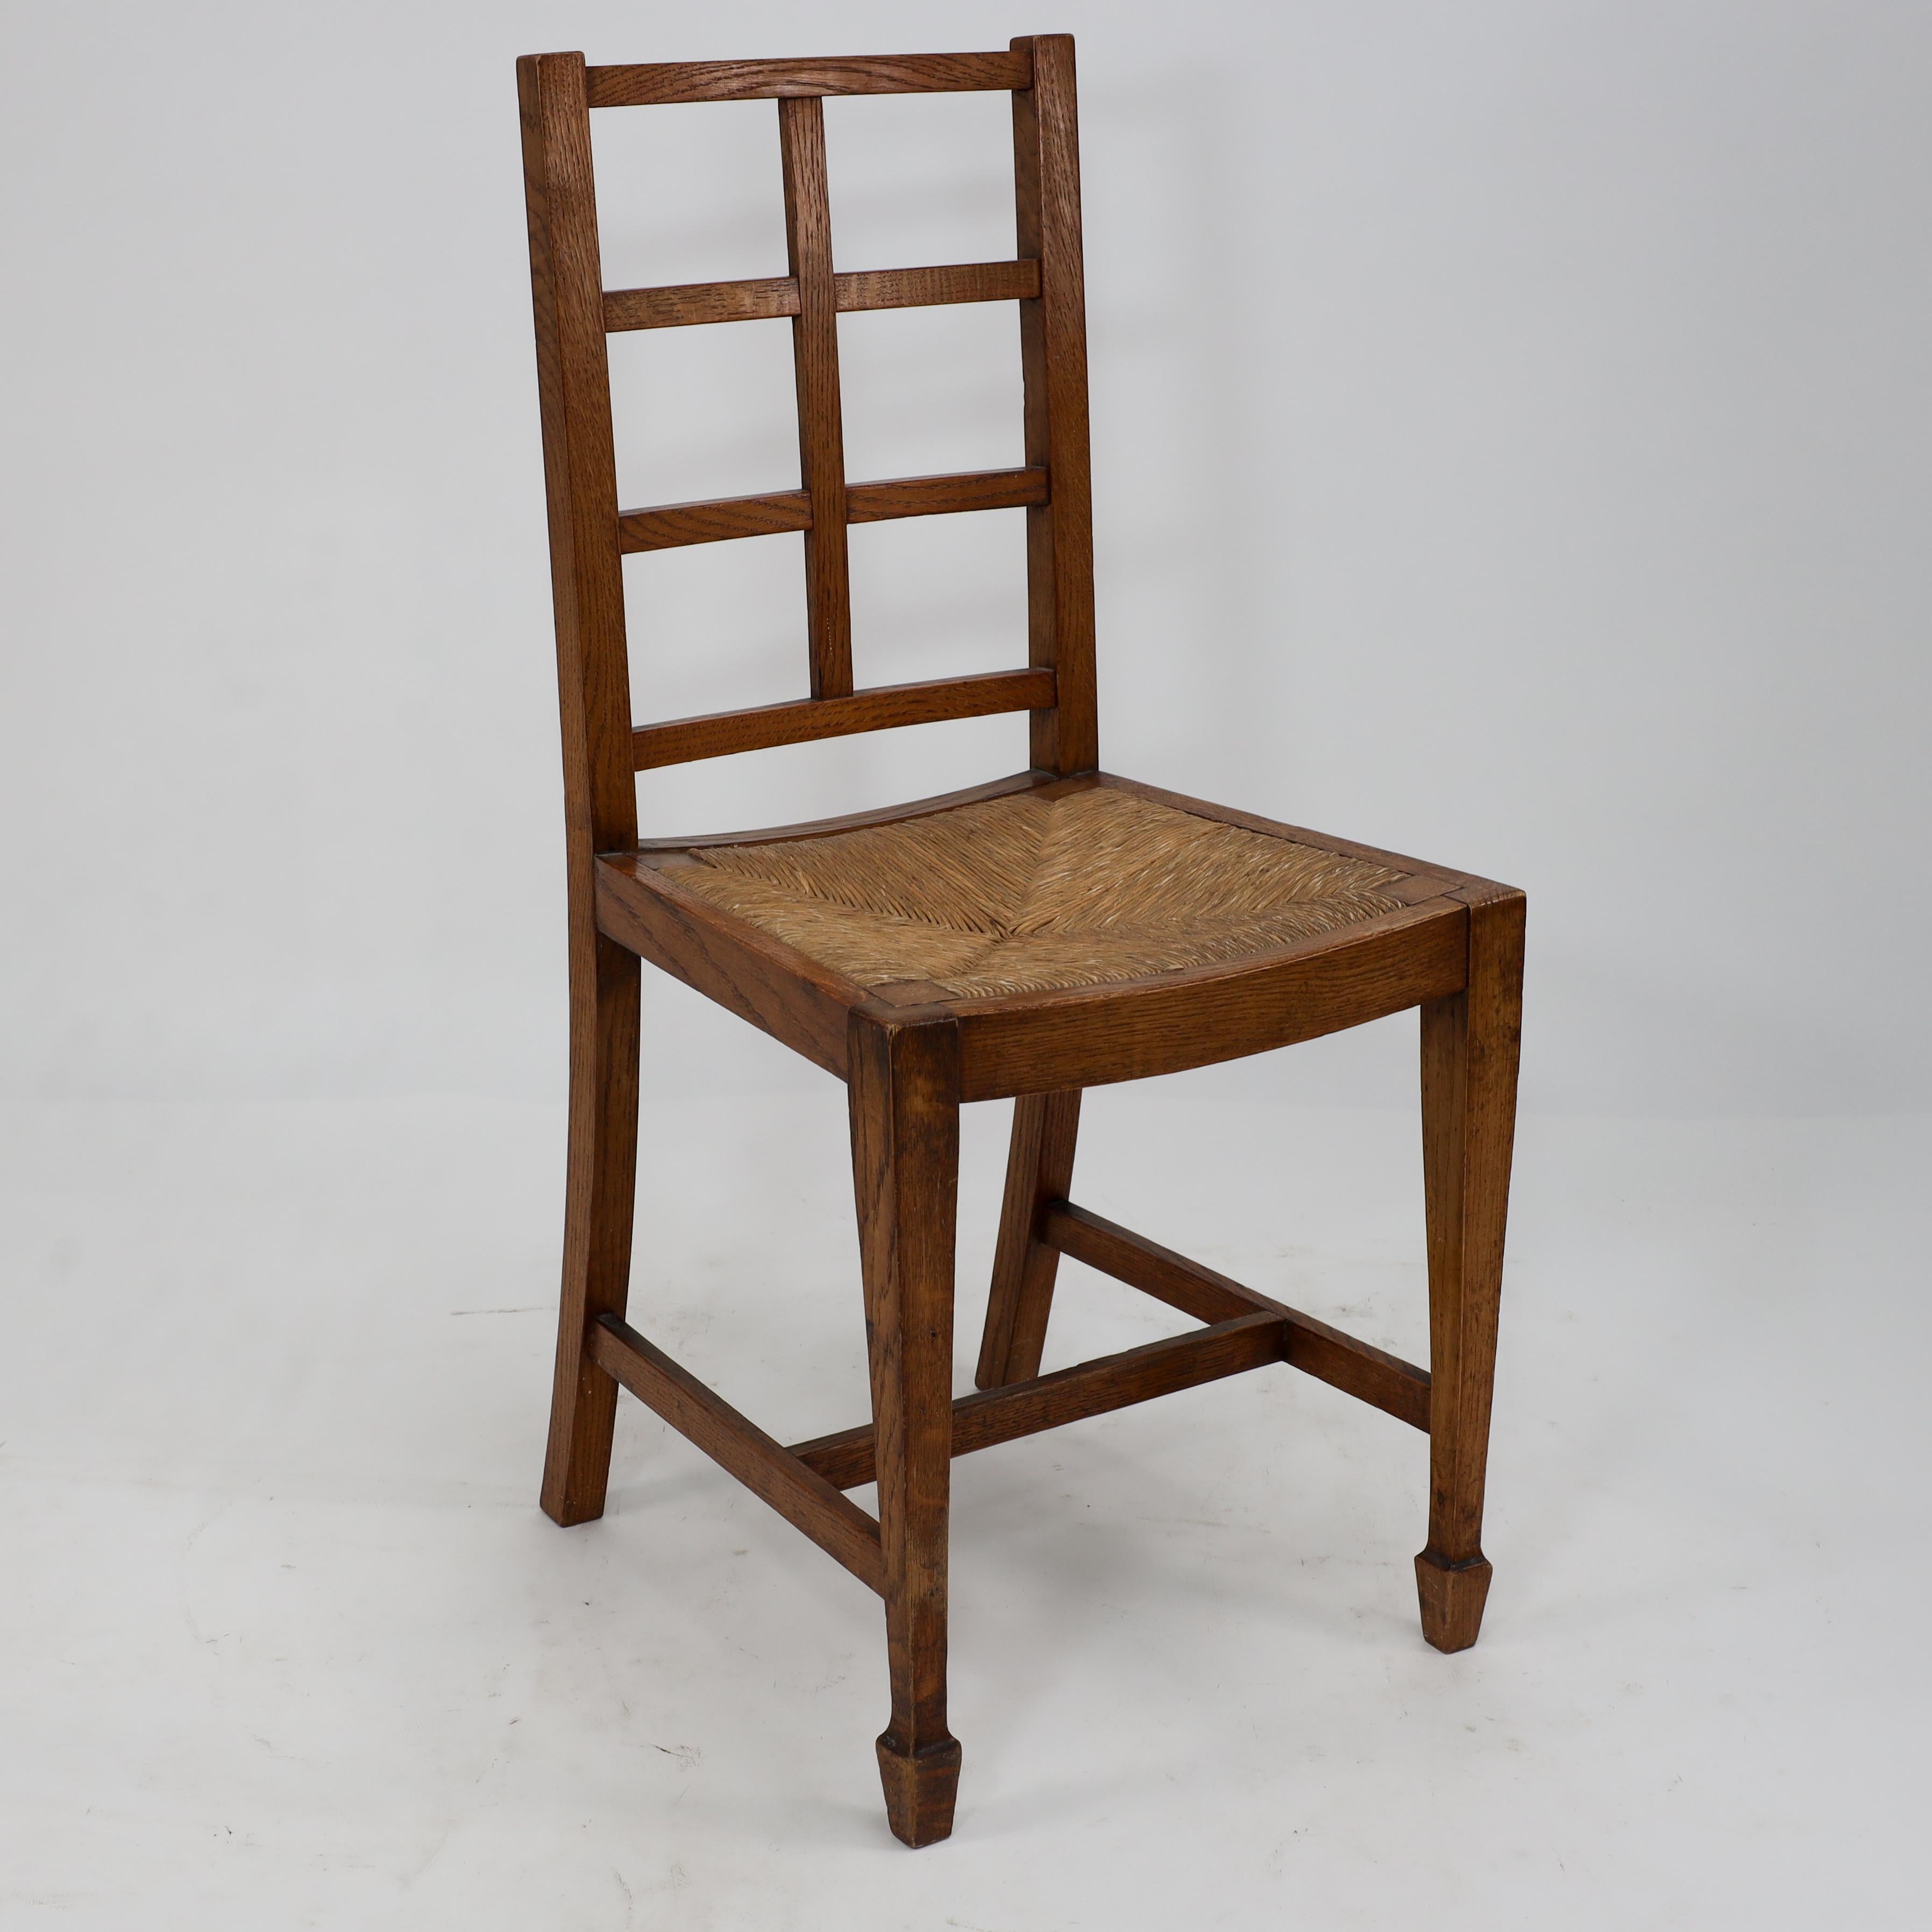 Heals von London, zugeschrieben. Ein Arts & Crafts Eiche Gitterrücken Beistellstuhl mit einem schönen original, fallen in Binsen Sitz.